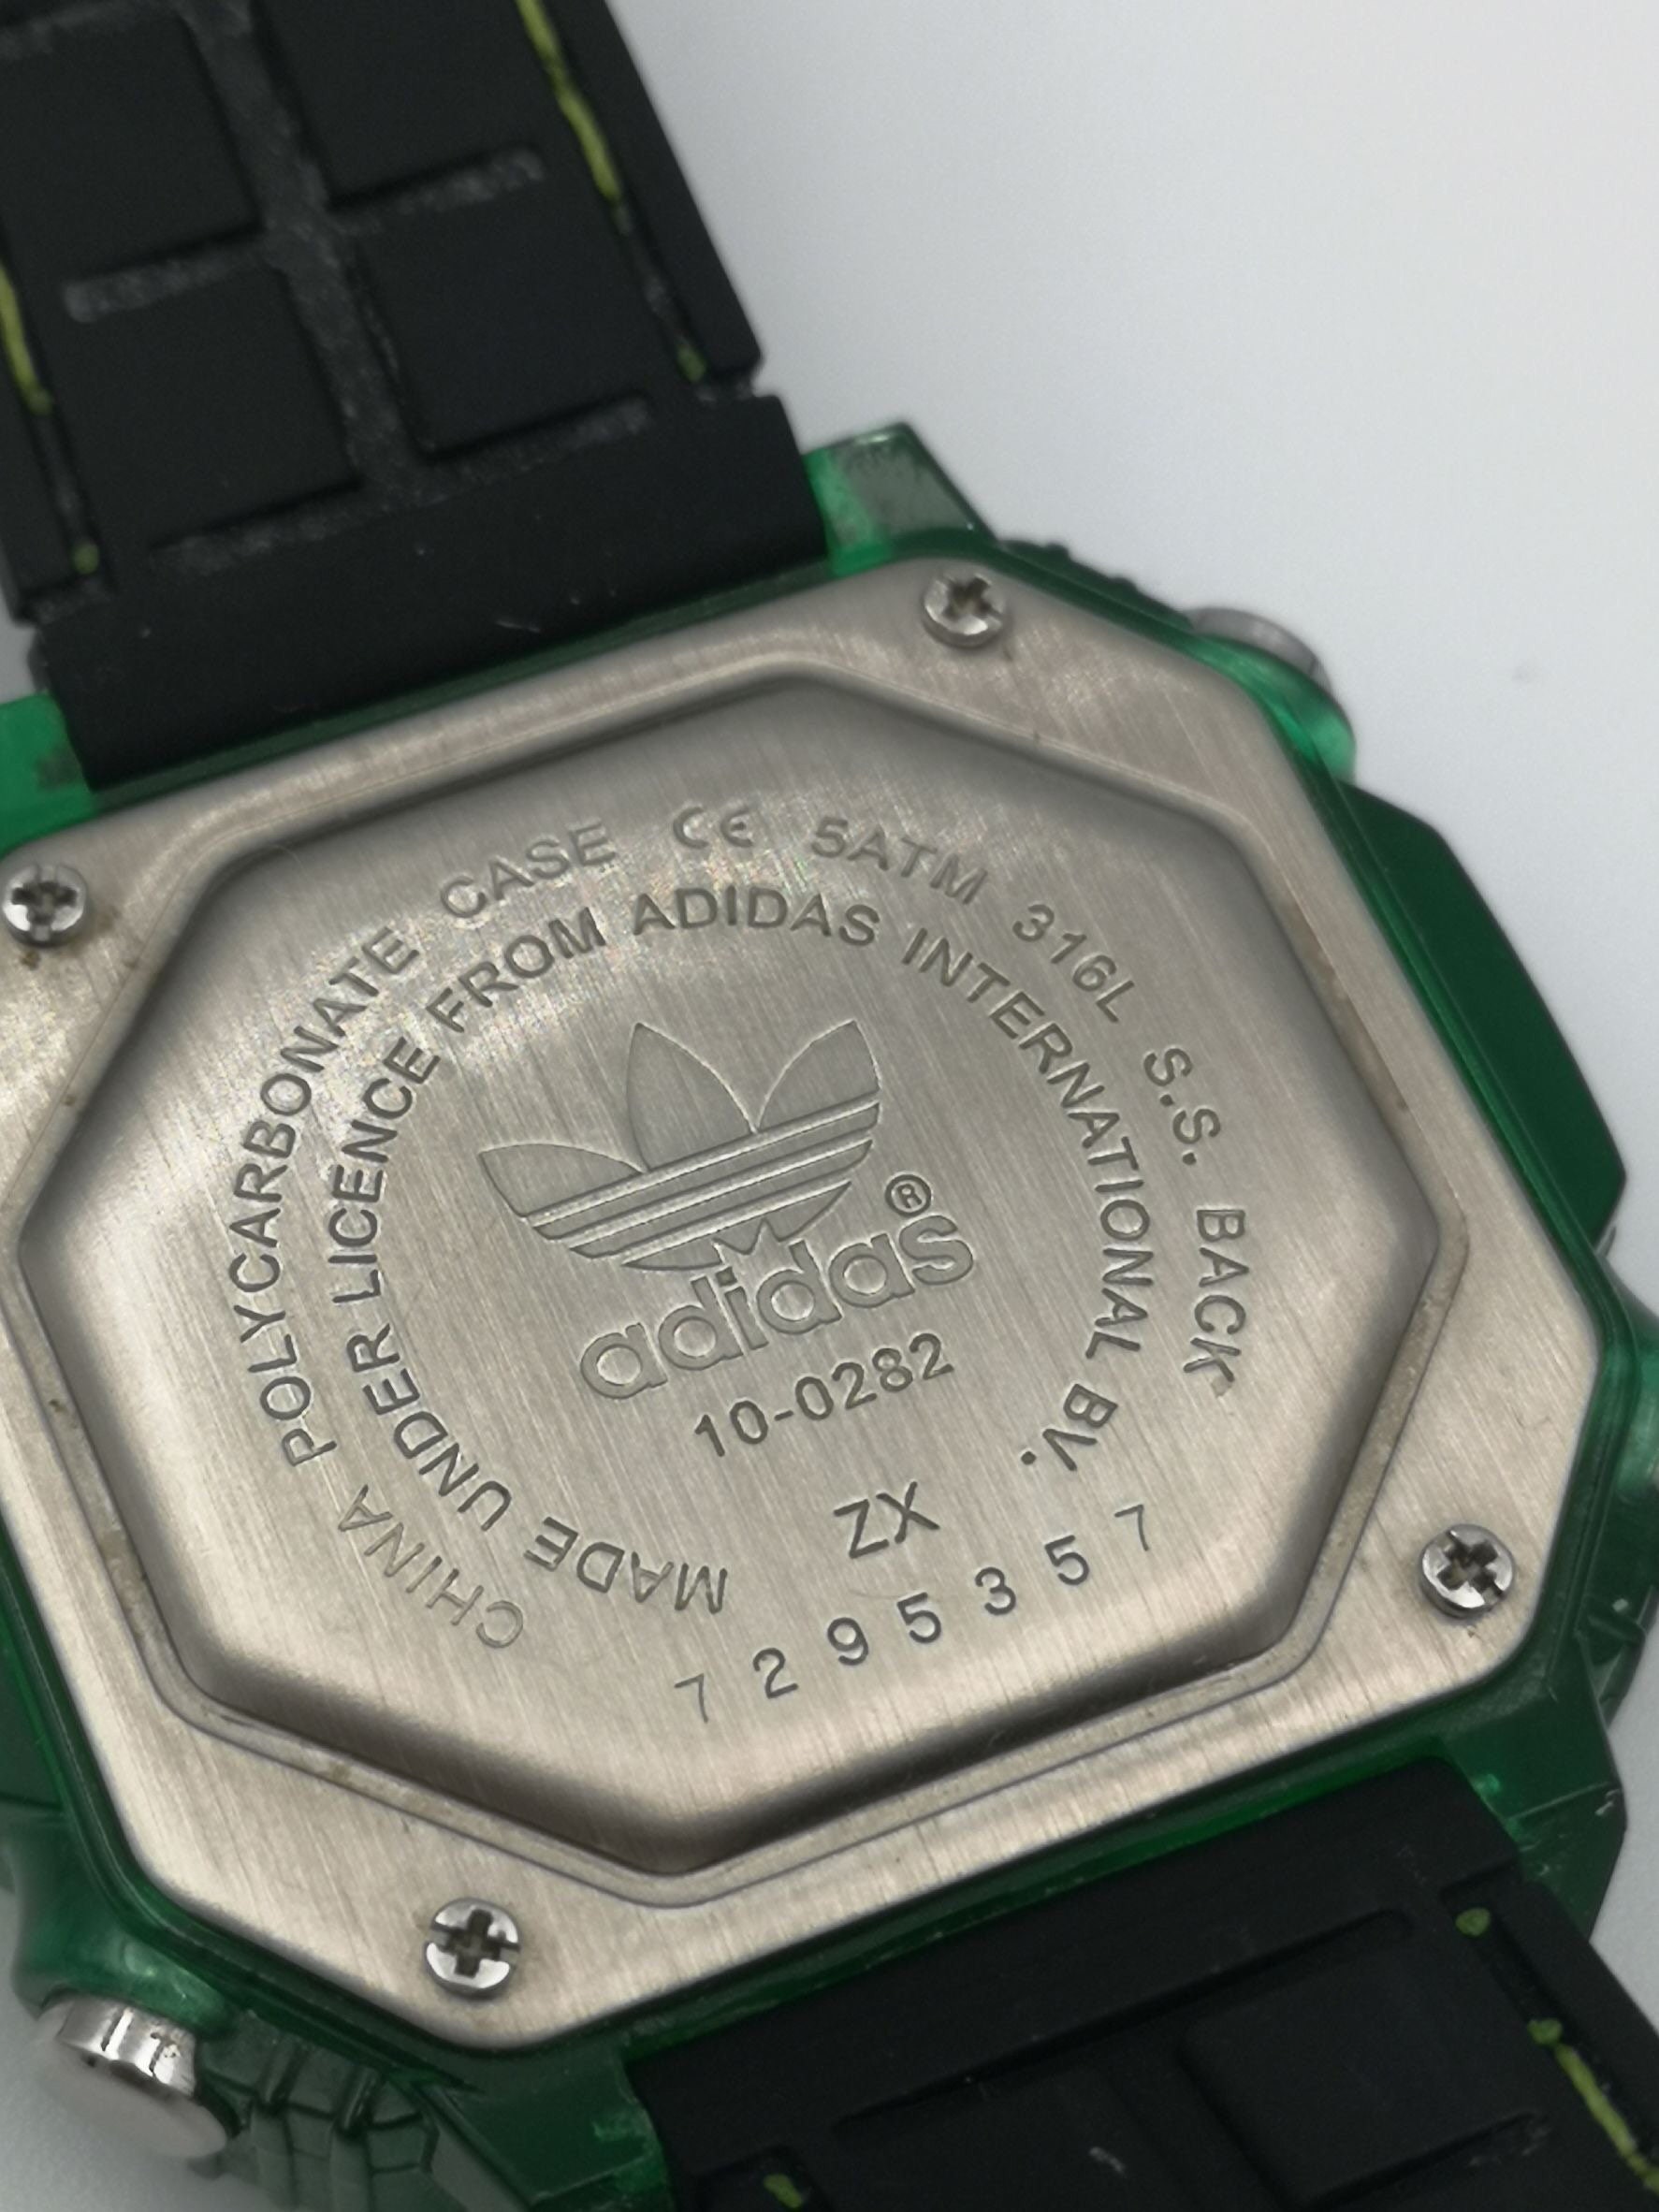 Normalmente Identidad parilla Reloj digital adidas color verde esmeralda vintage. - Etsy España